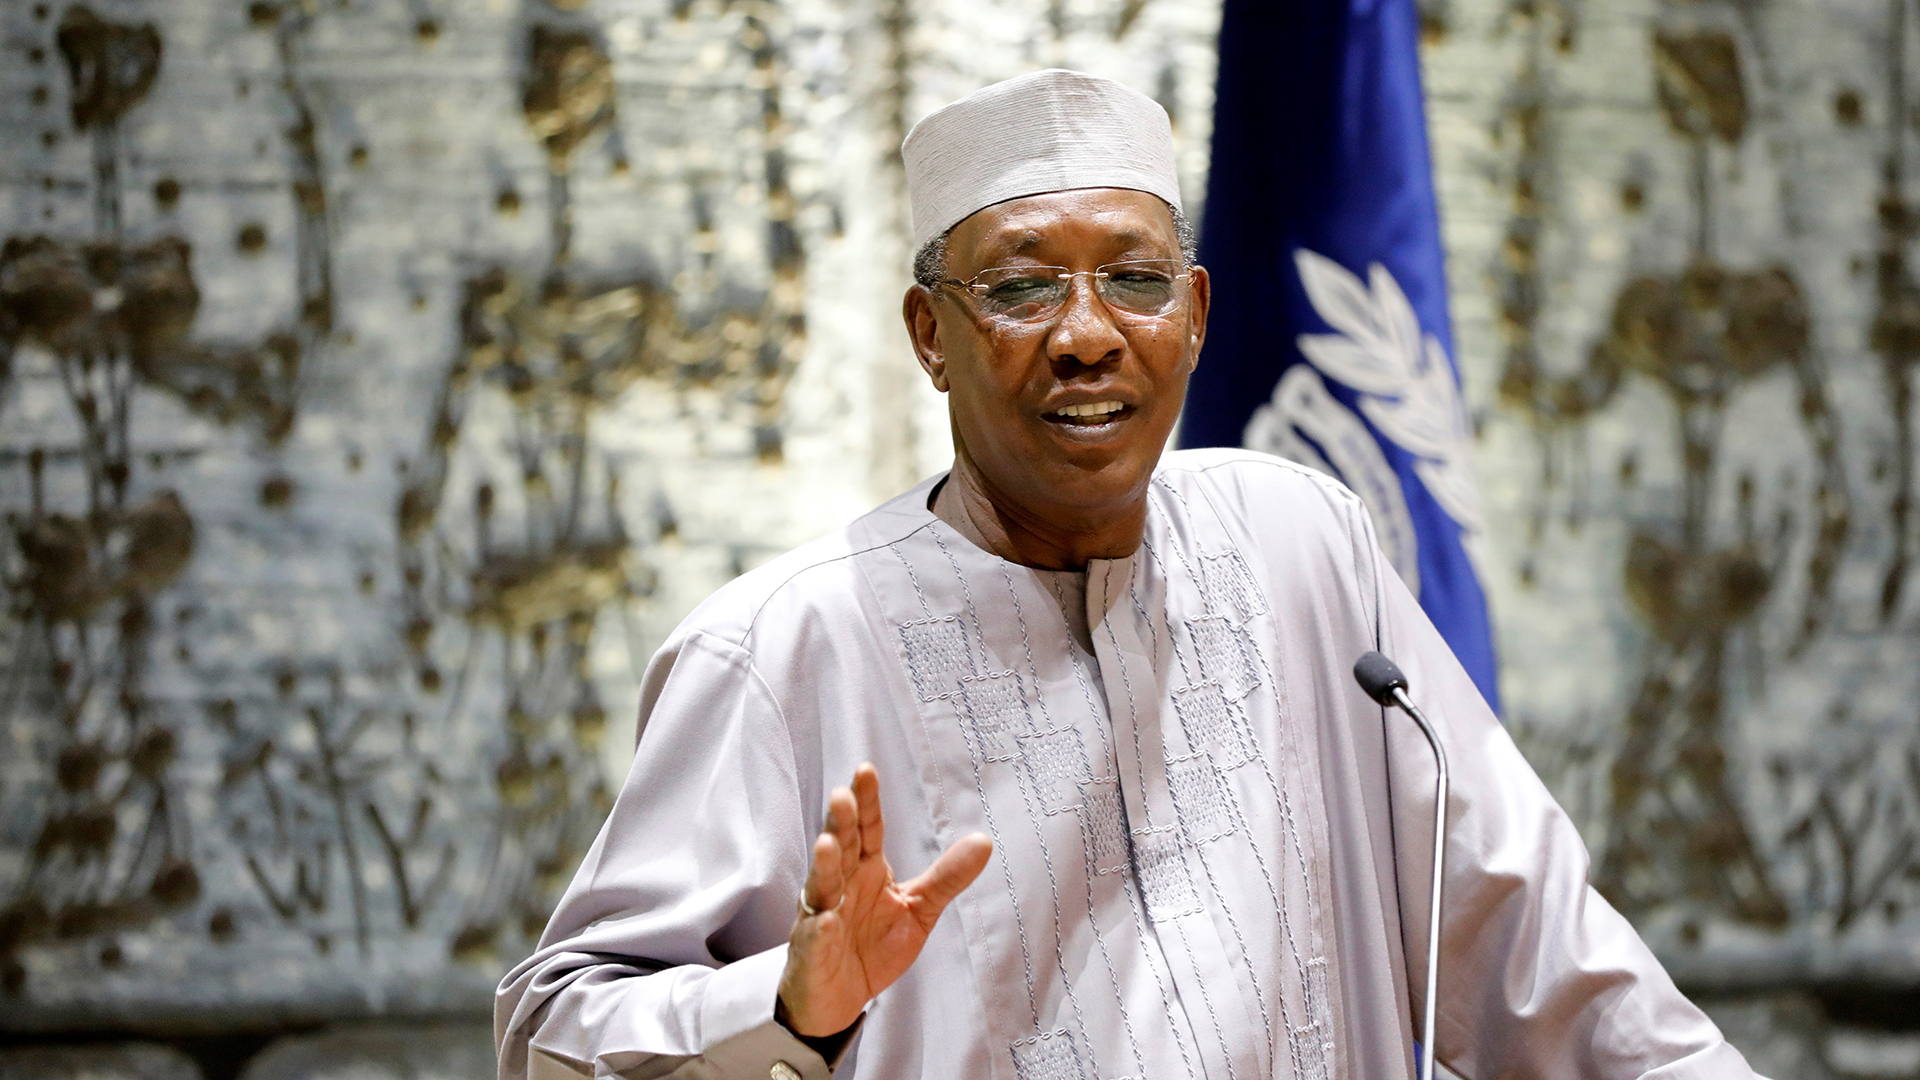 El presidente de Chad murió en combate con insurgentes